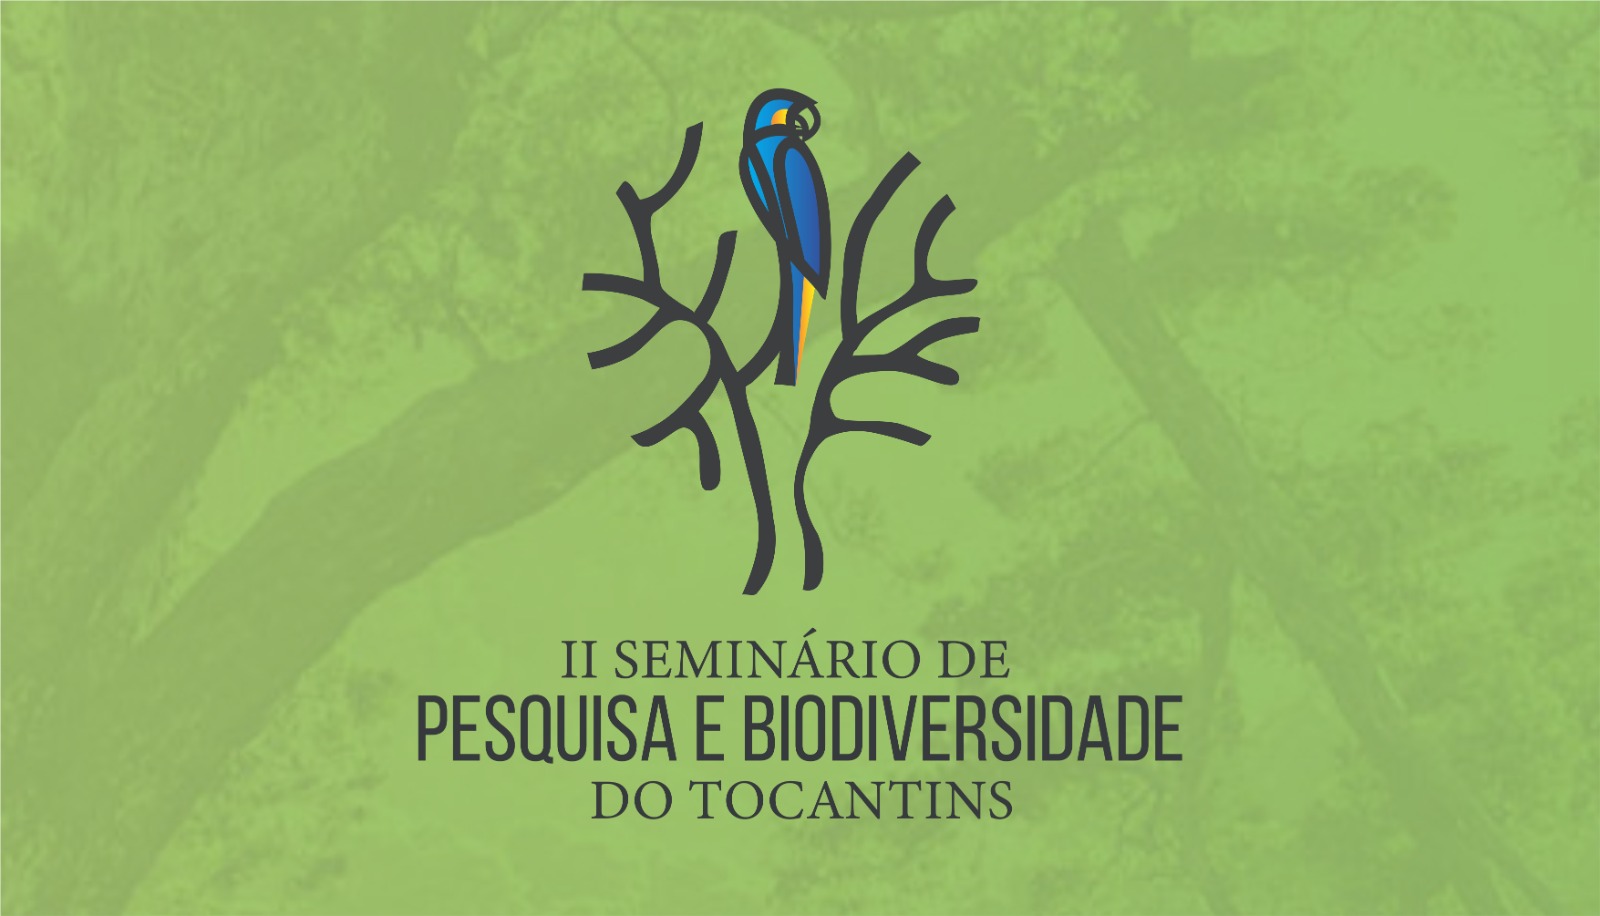 Inscrição de trabalhos para o II Seminário de Pesquisa e Biodiversidade termina neste sábado, 15